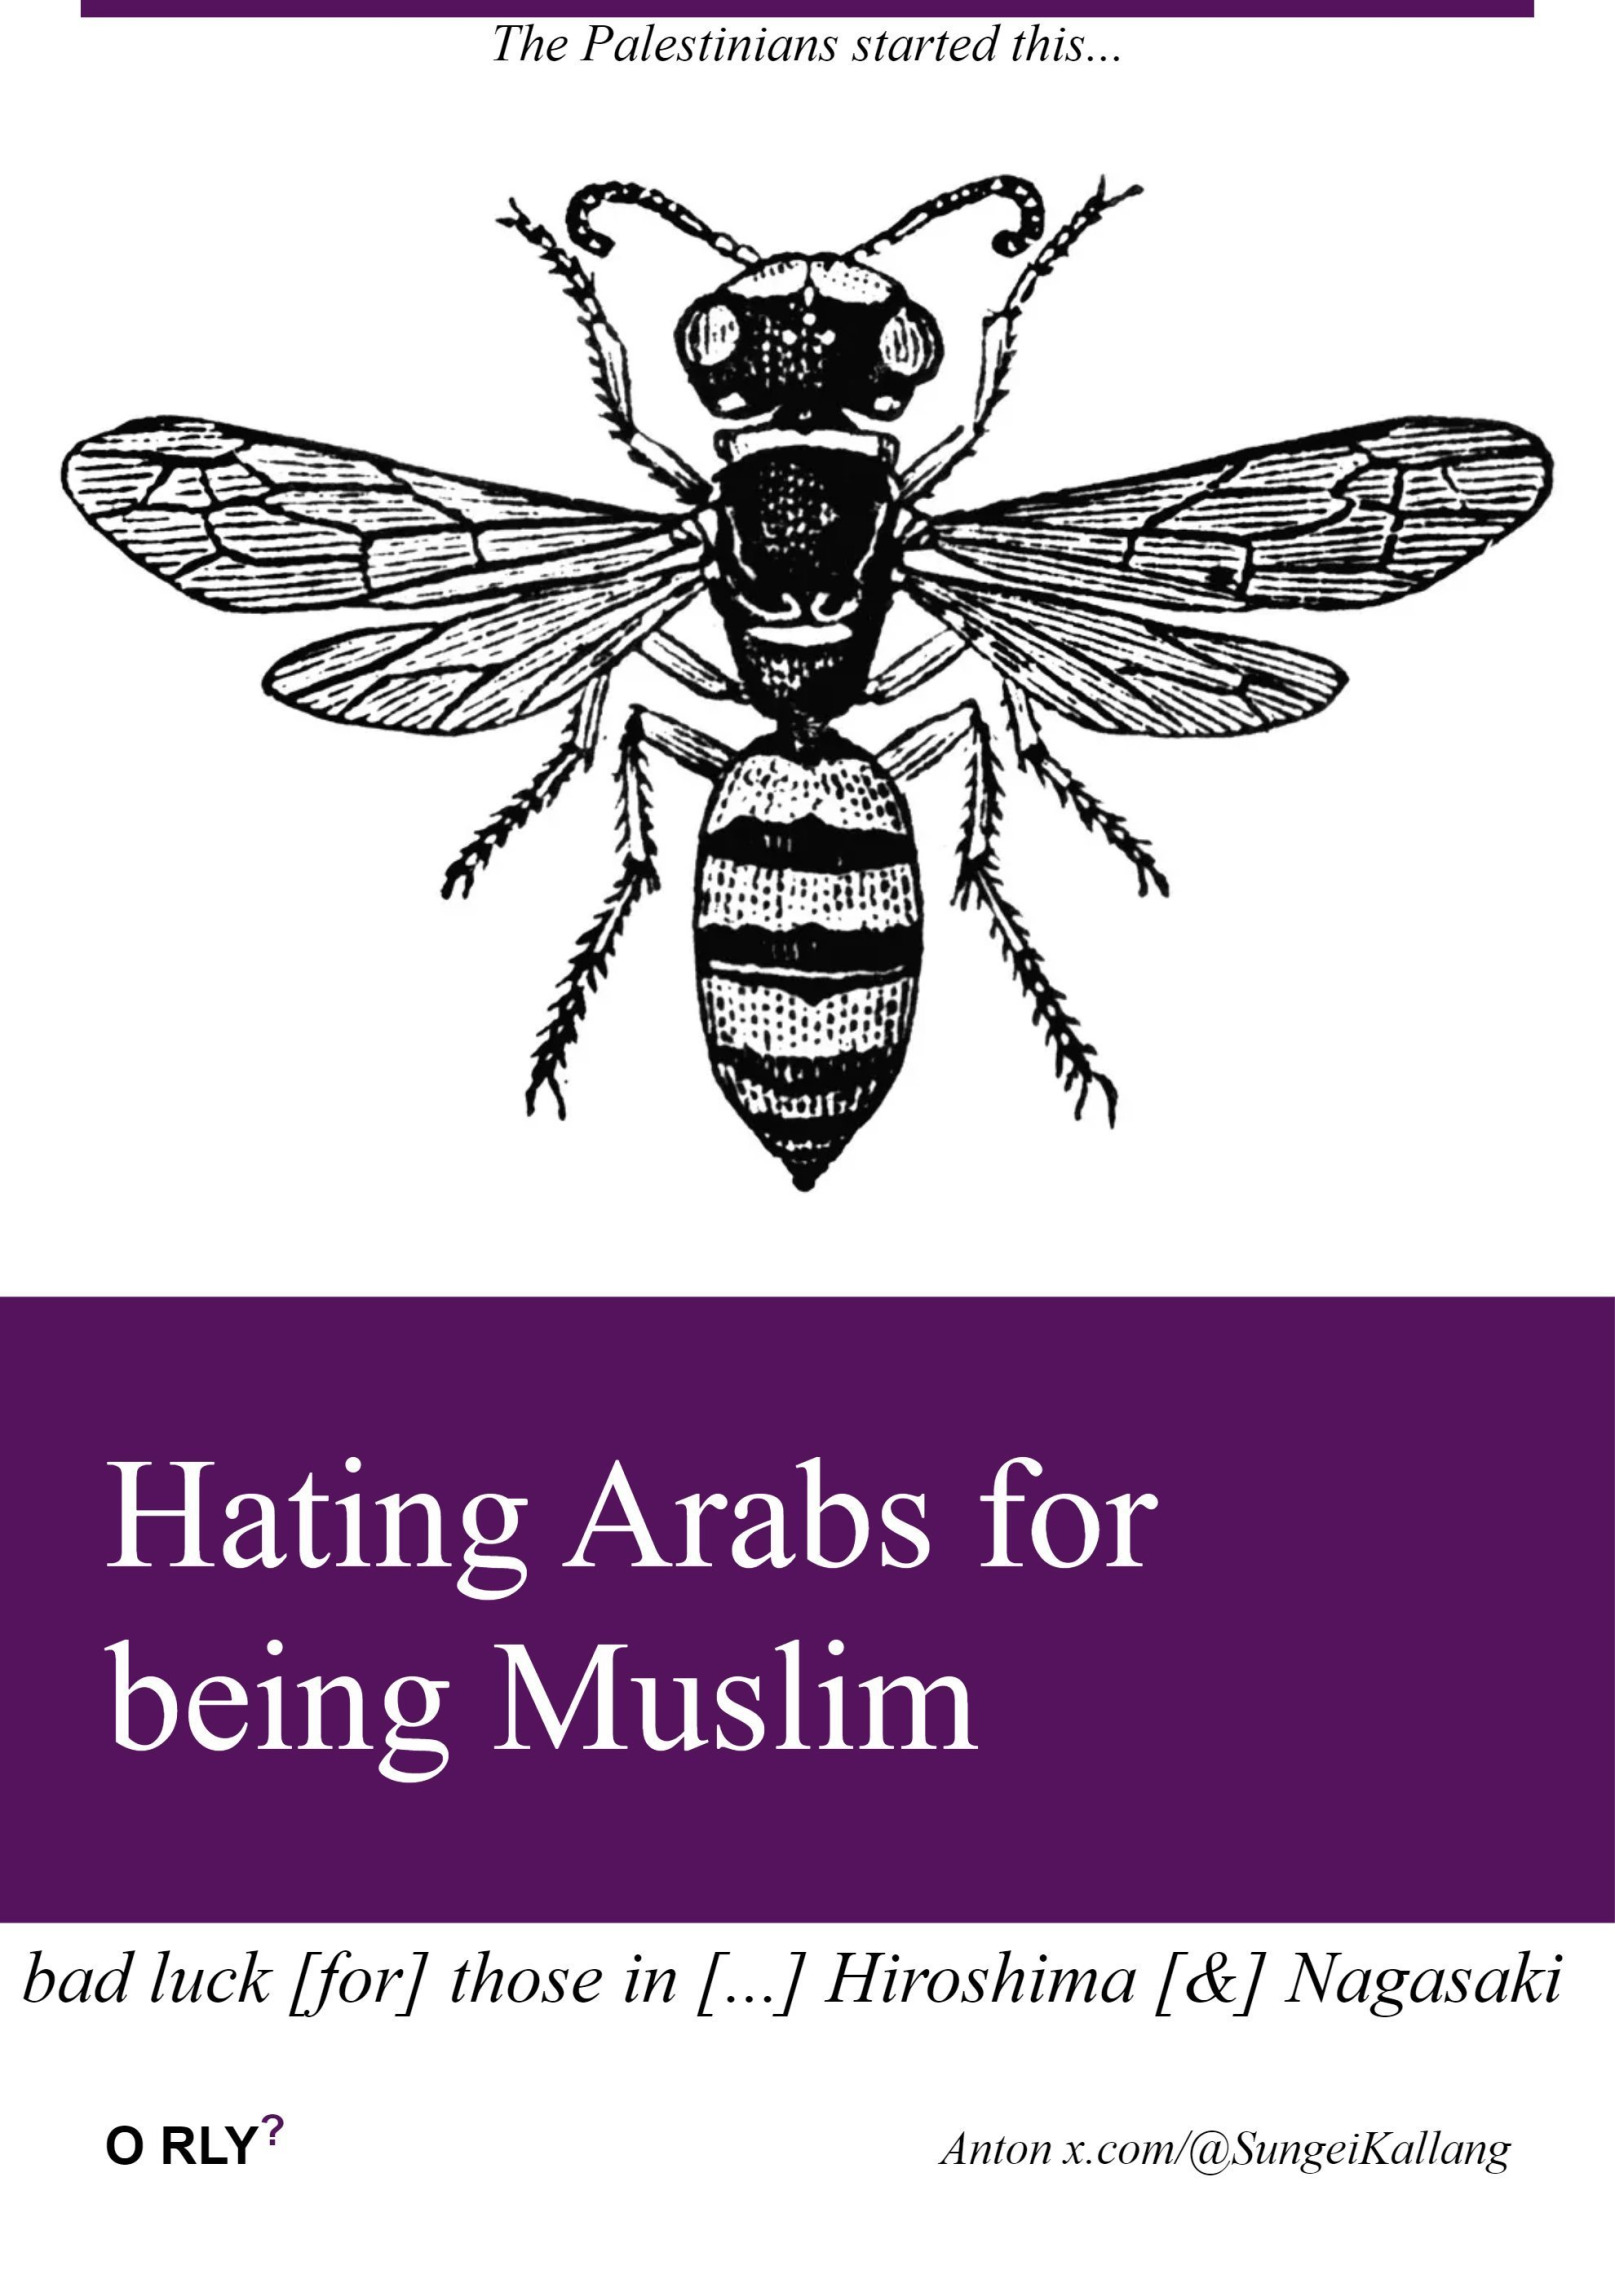 Hating arabs for being Muslim Template Blank Meme Template